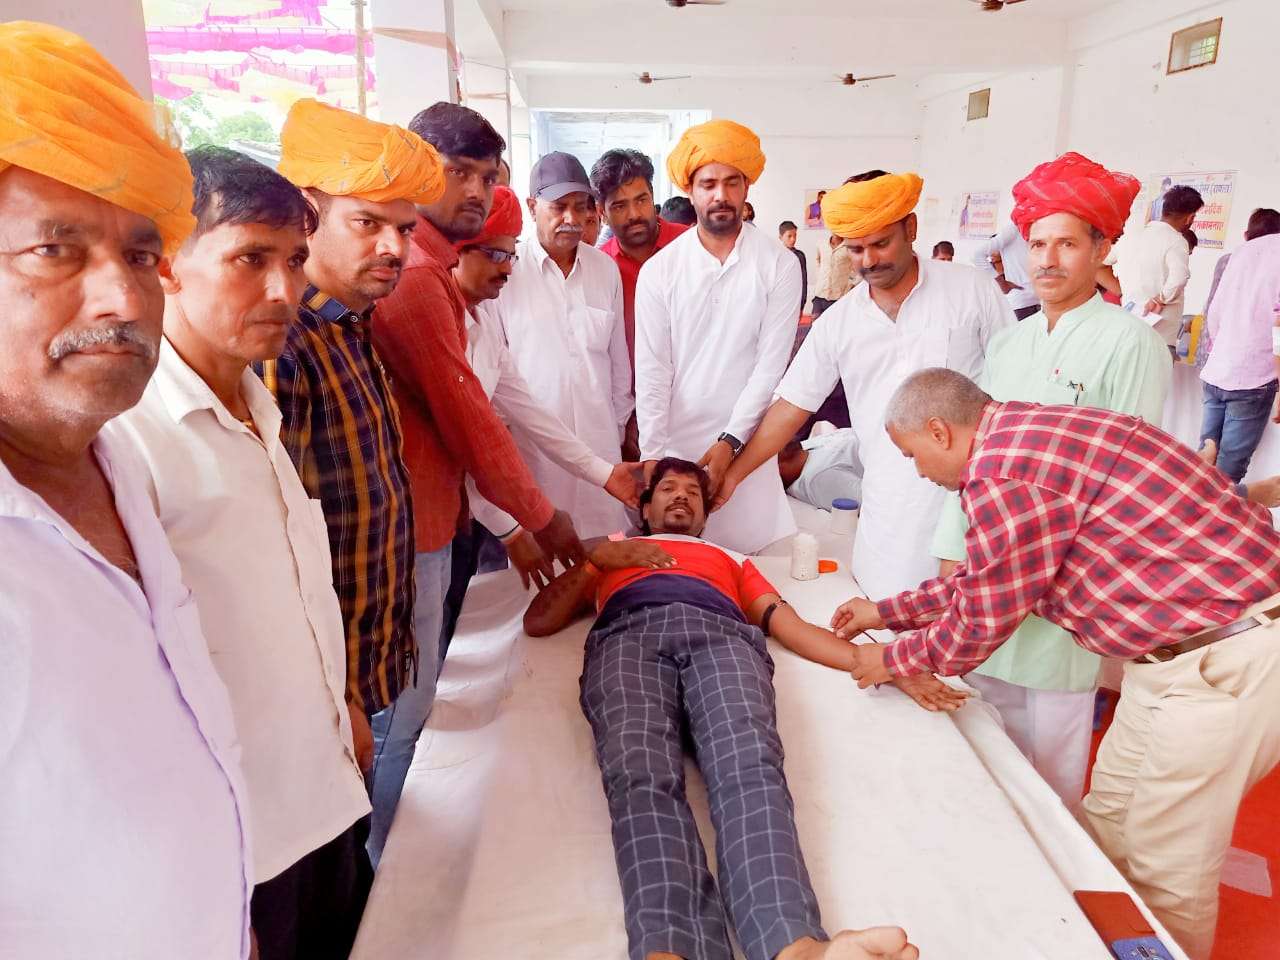 धरतीदेवरा मन्दिर में रक्तदान शिविर का आयोजन, 152 यूनिट रक्त संग्रहित